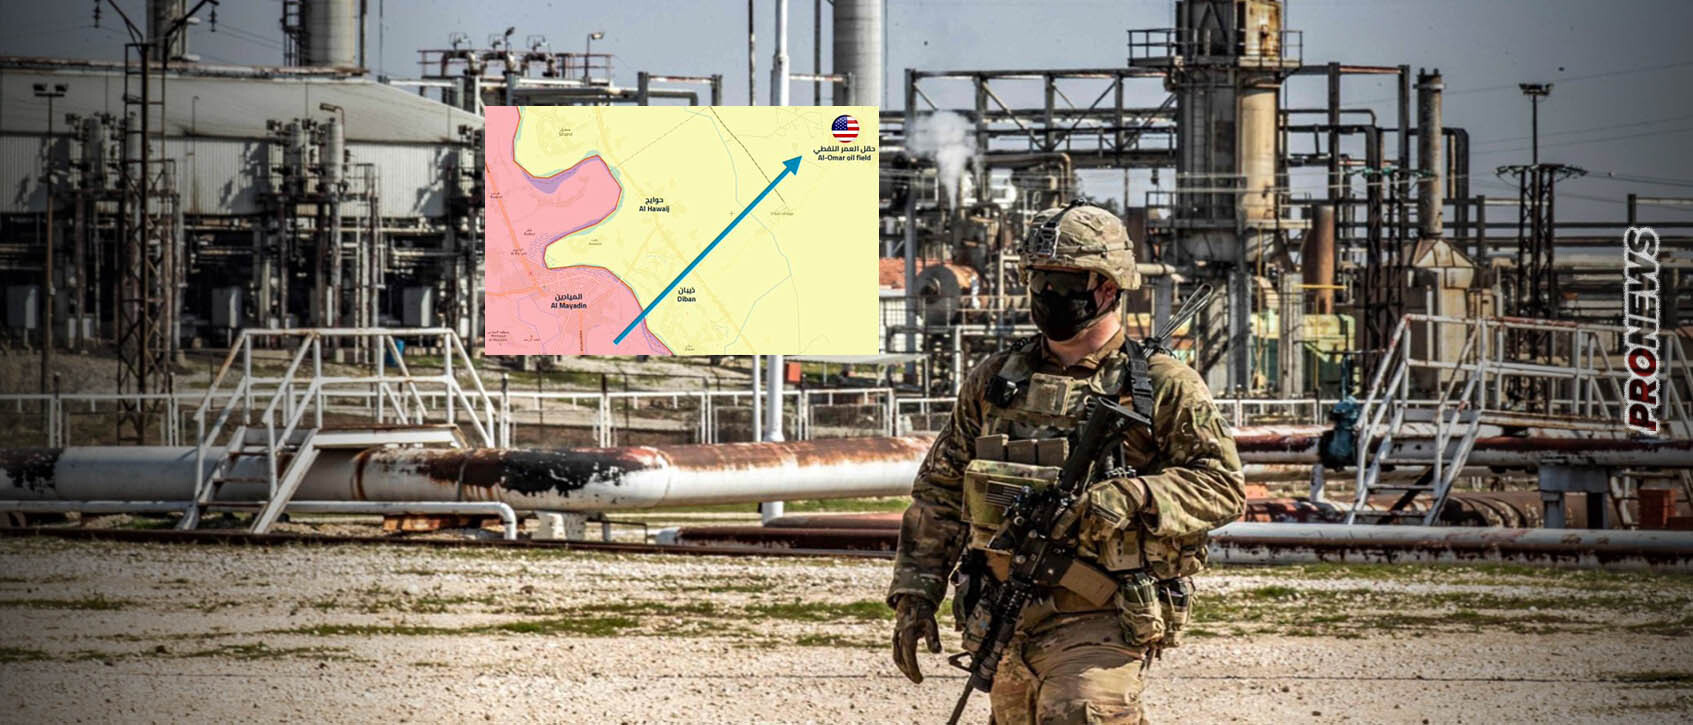 Δυνάμεις προσκείμενες στο Ιράν επιτέθηκαν στην αμερικανική βάση στις πετρελαιοπηγές του Αλ Ομάρ στην Συρία!